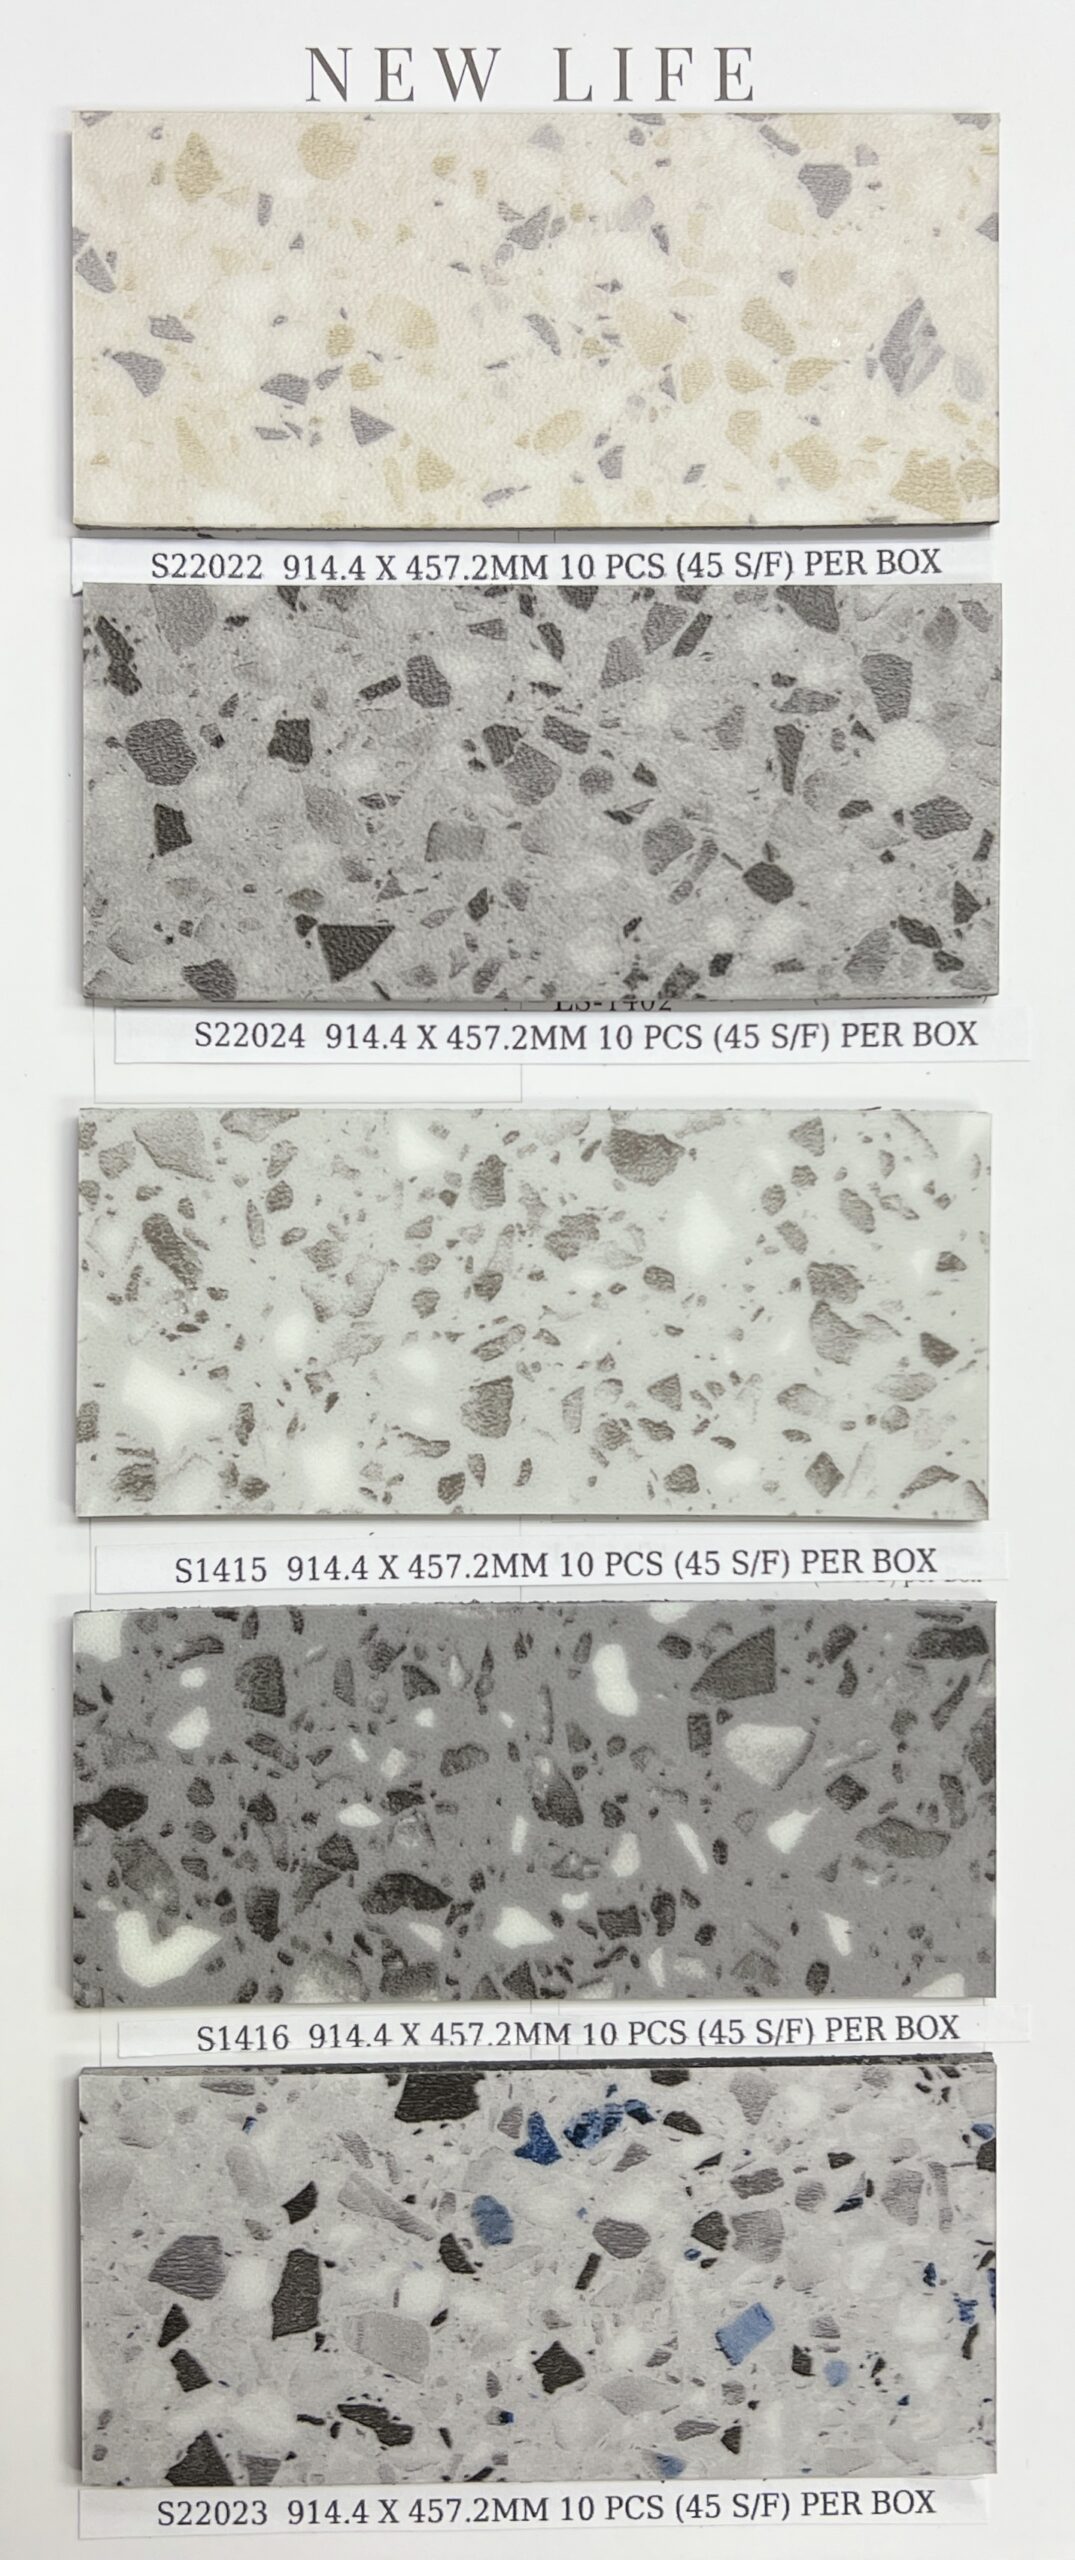 2mm vinyl tile with Terrazzo graphic